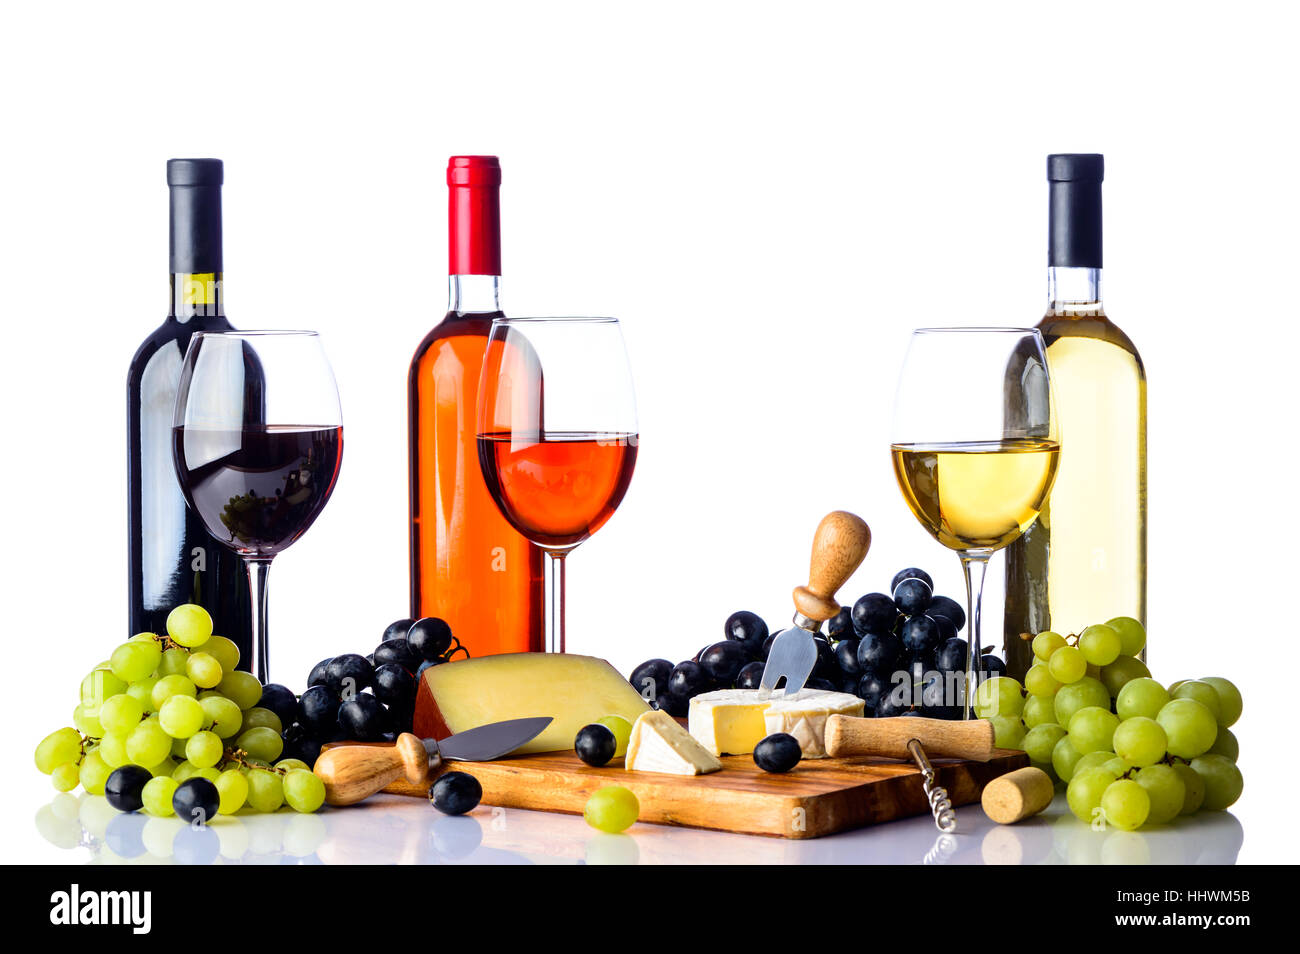 Tre Bicchieri e bottiglie di vino con uve bianche e rosse, formaggi e sul tagliere di legno, tutti su sfondo bianco Foto Stock